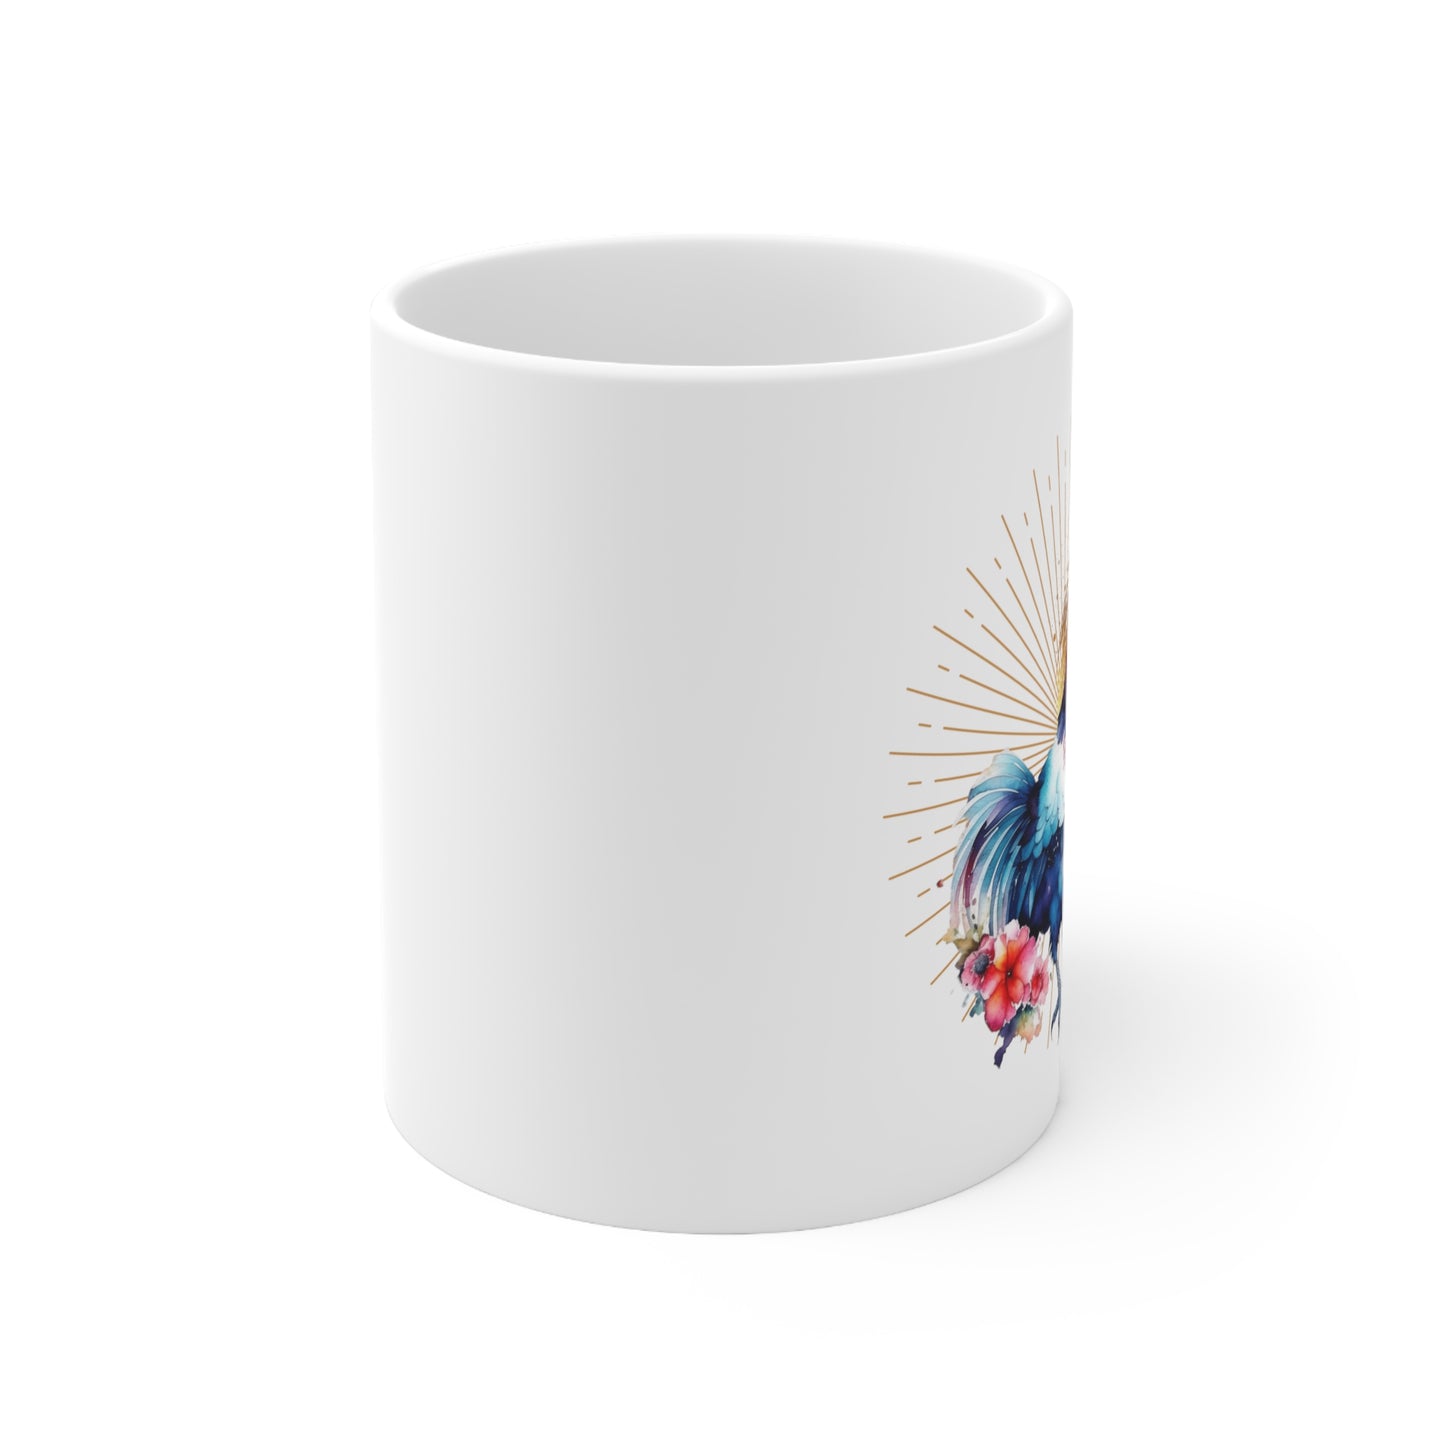 Golden Rooster Ceramic Mug 11oz